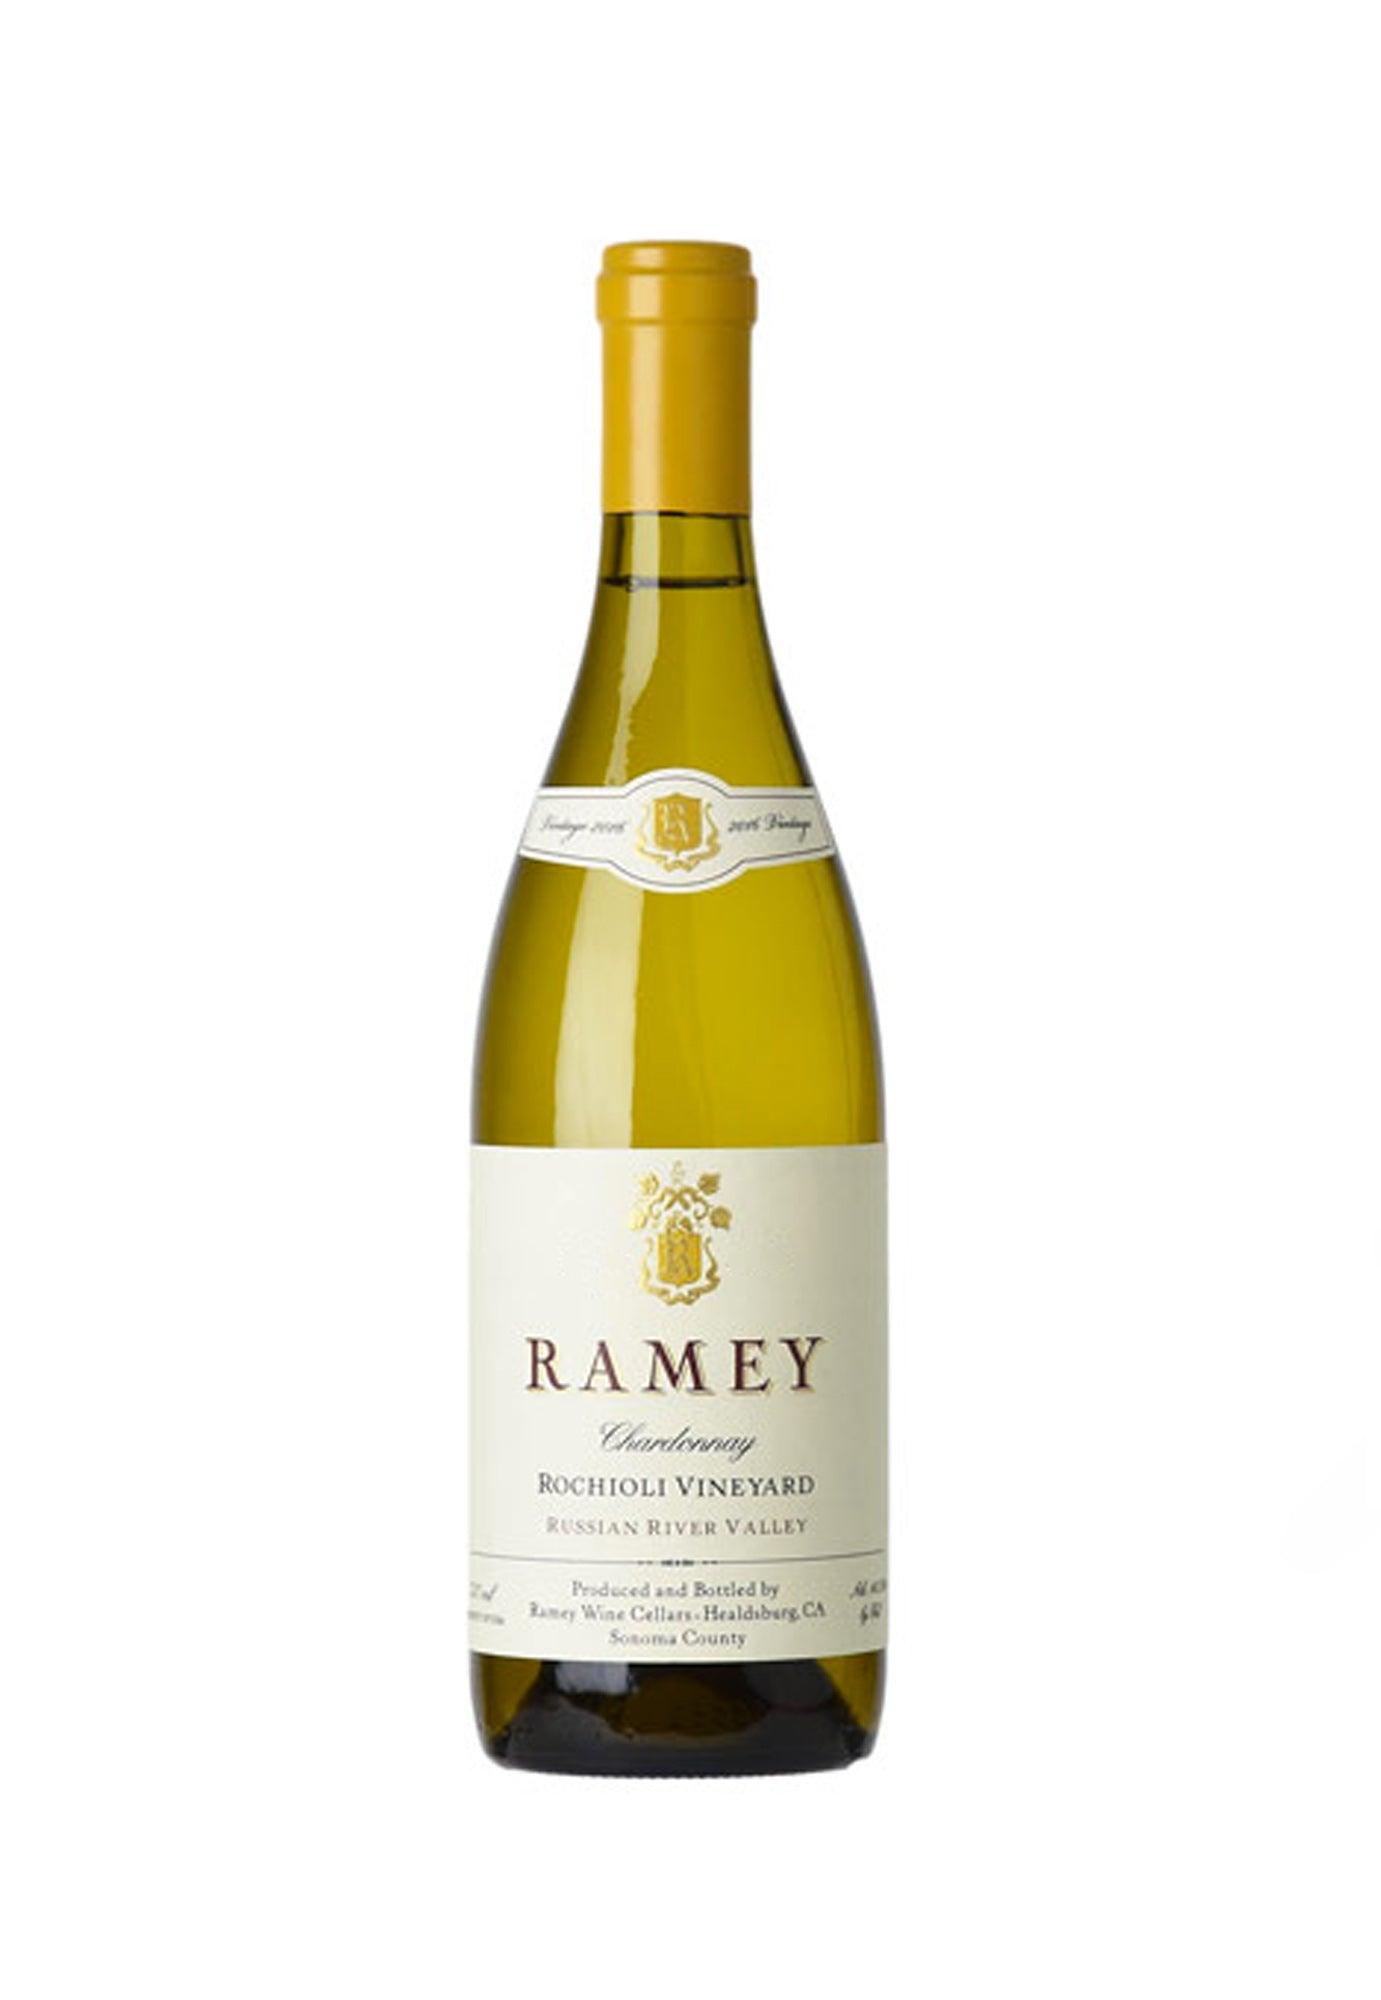 Ramey Chardonnay Rochioli Vineyard 2016